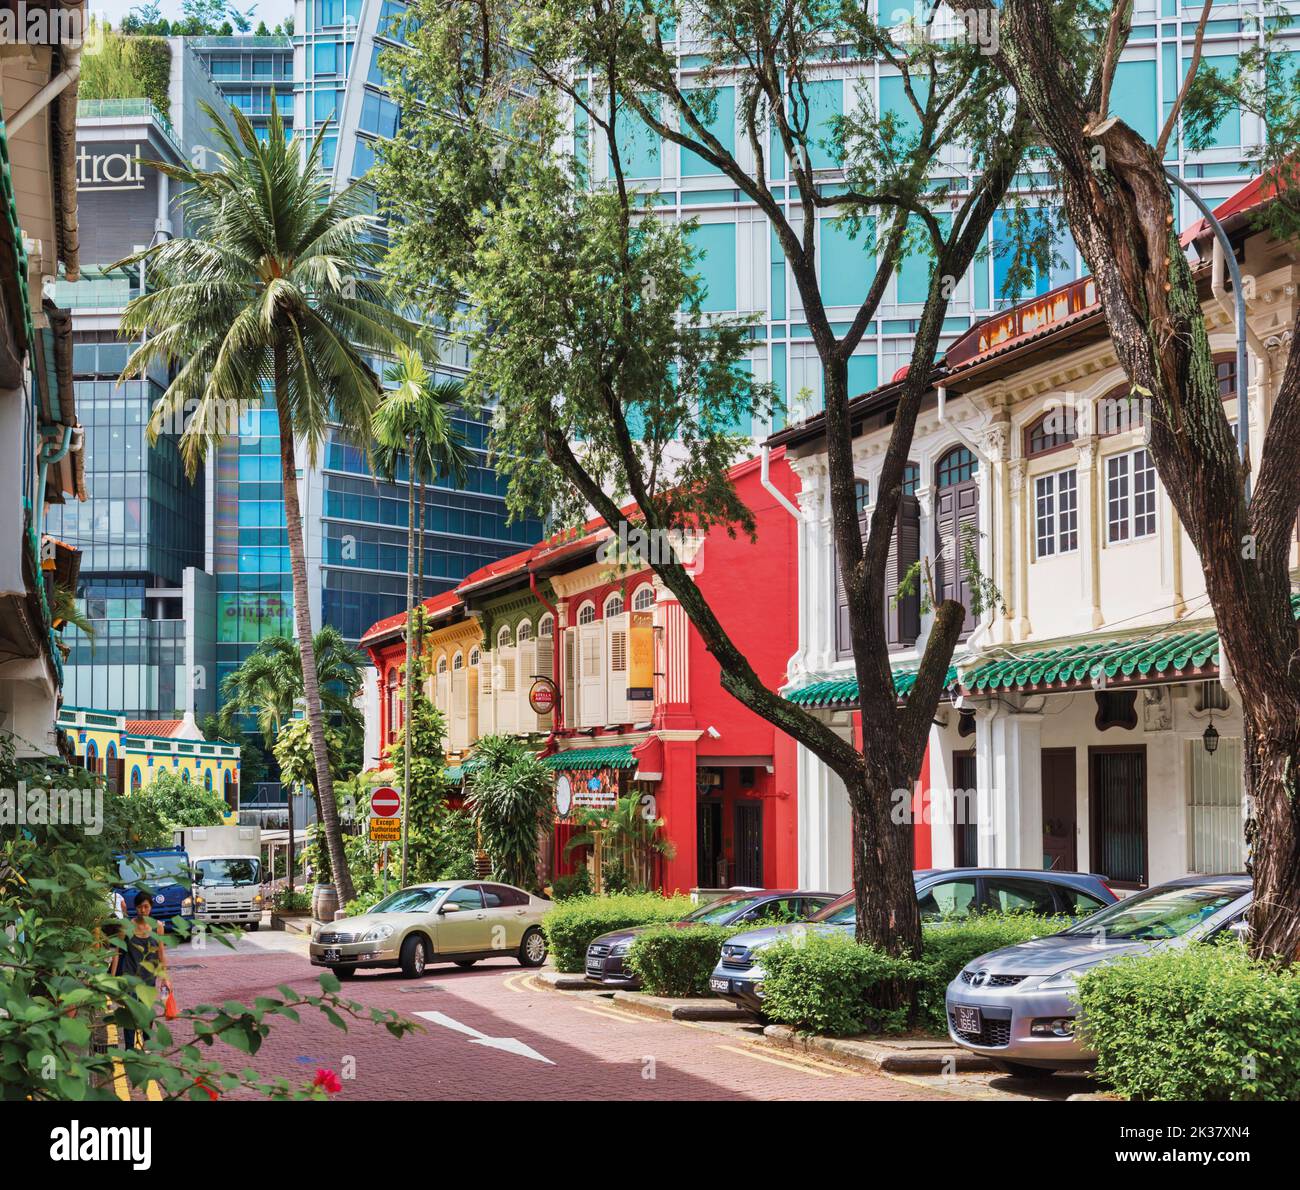 Proprietà in Emerald Hill Road, Repubblica di Singapore. Emerald Hill si trova vicino a Orchard Road, una delle principali arterie di Singapore. È dotato di p Foto Stock